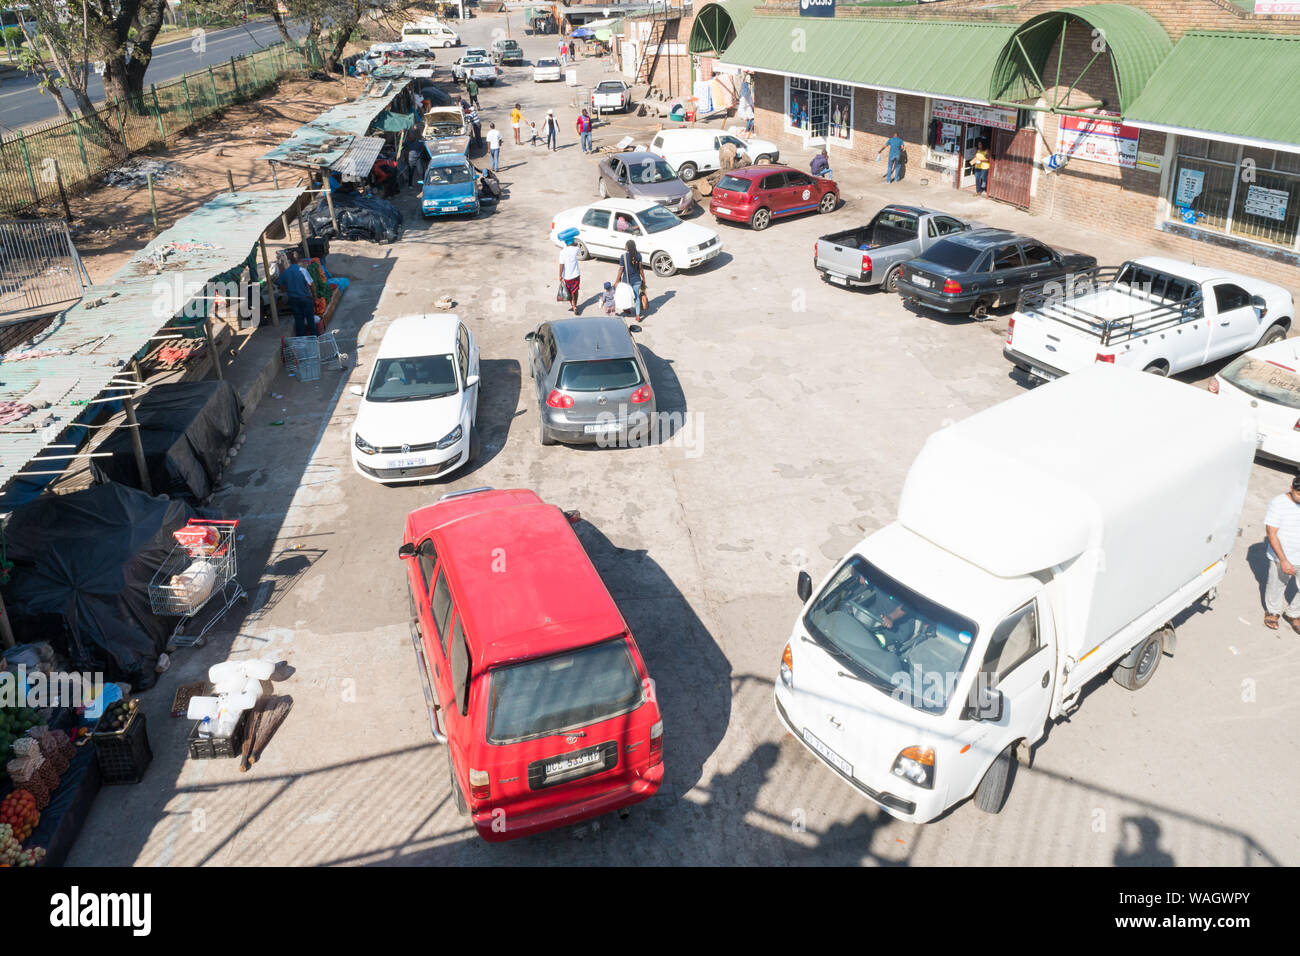 Vue aérienne ou Vue de dessus sur une scène du marché informel à Hazyview, Mpumalanga, Afrique du Sud avec des personnes et des véhicules Banque D'Images